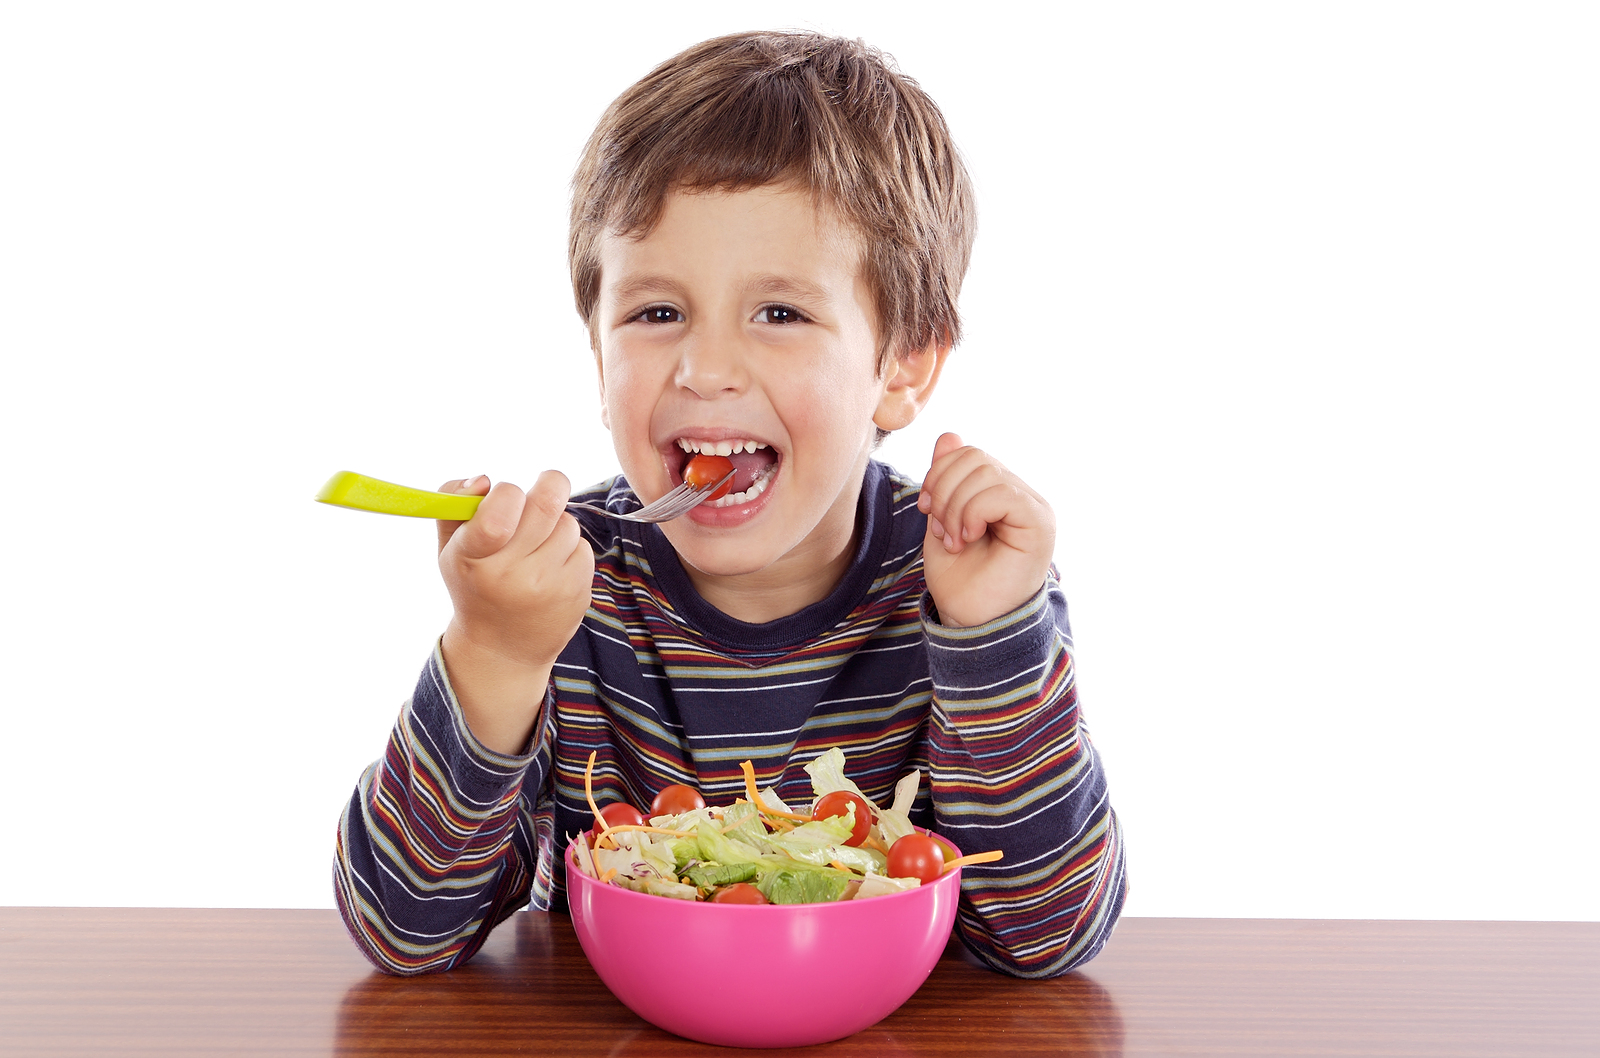 Bio-acimin - 05 - Apr - Một số thói quen ăn uống giúp trẻ cải thiện hệ tiêu hóa